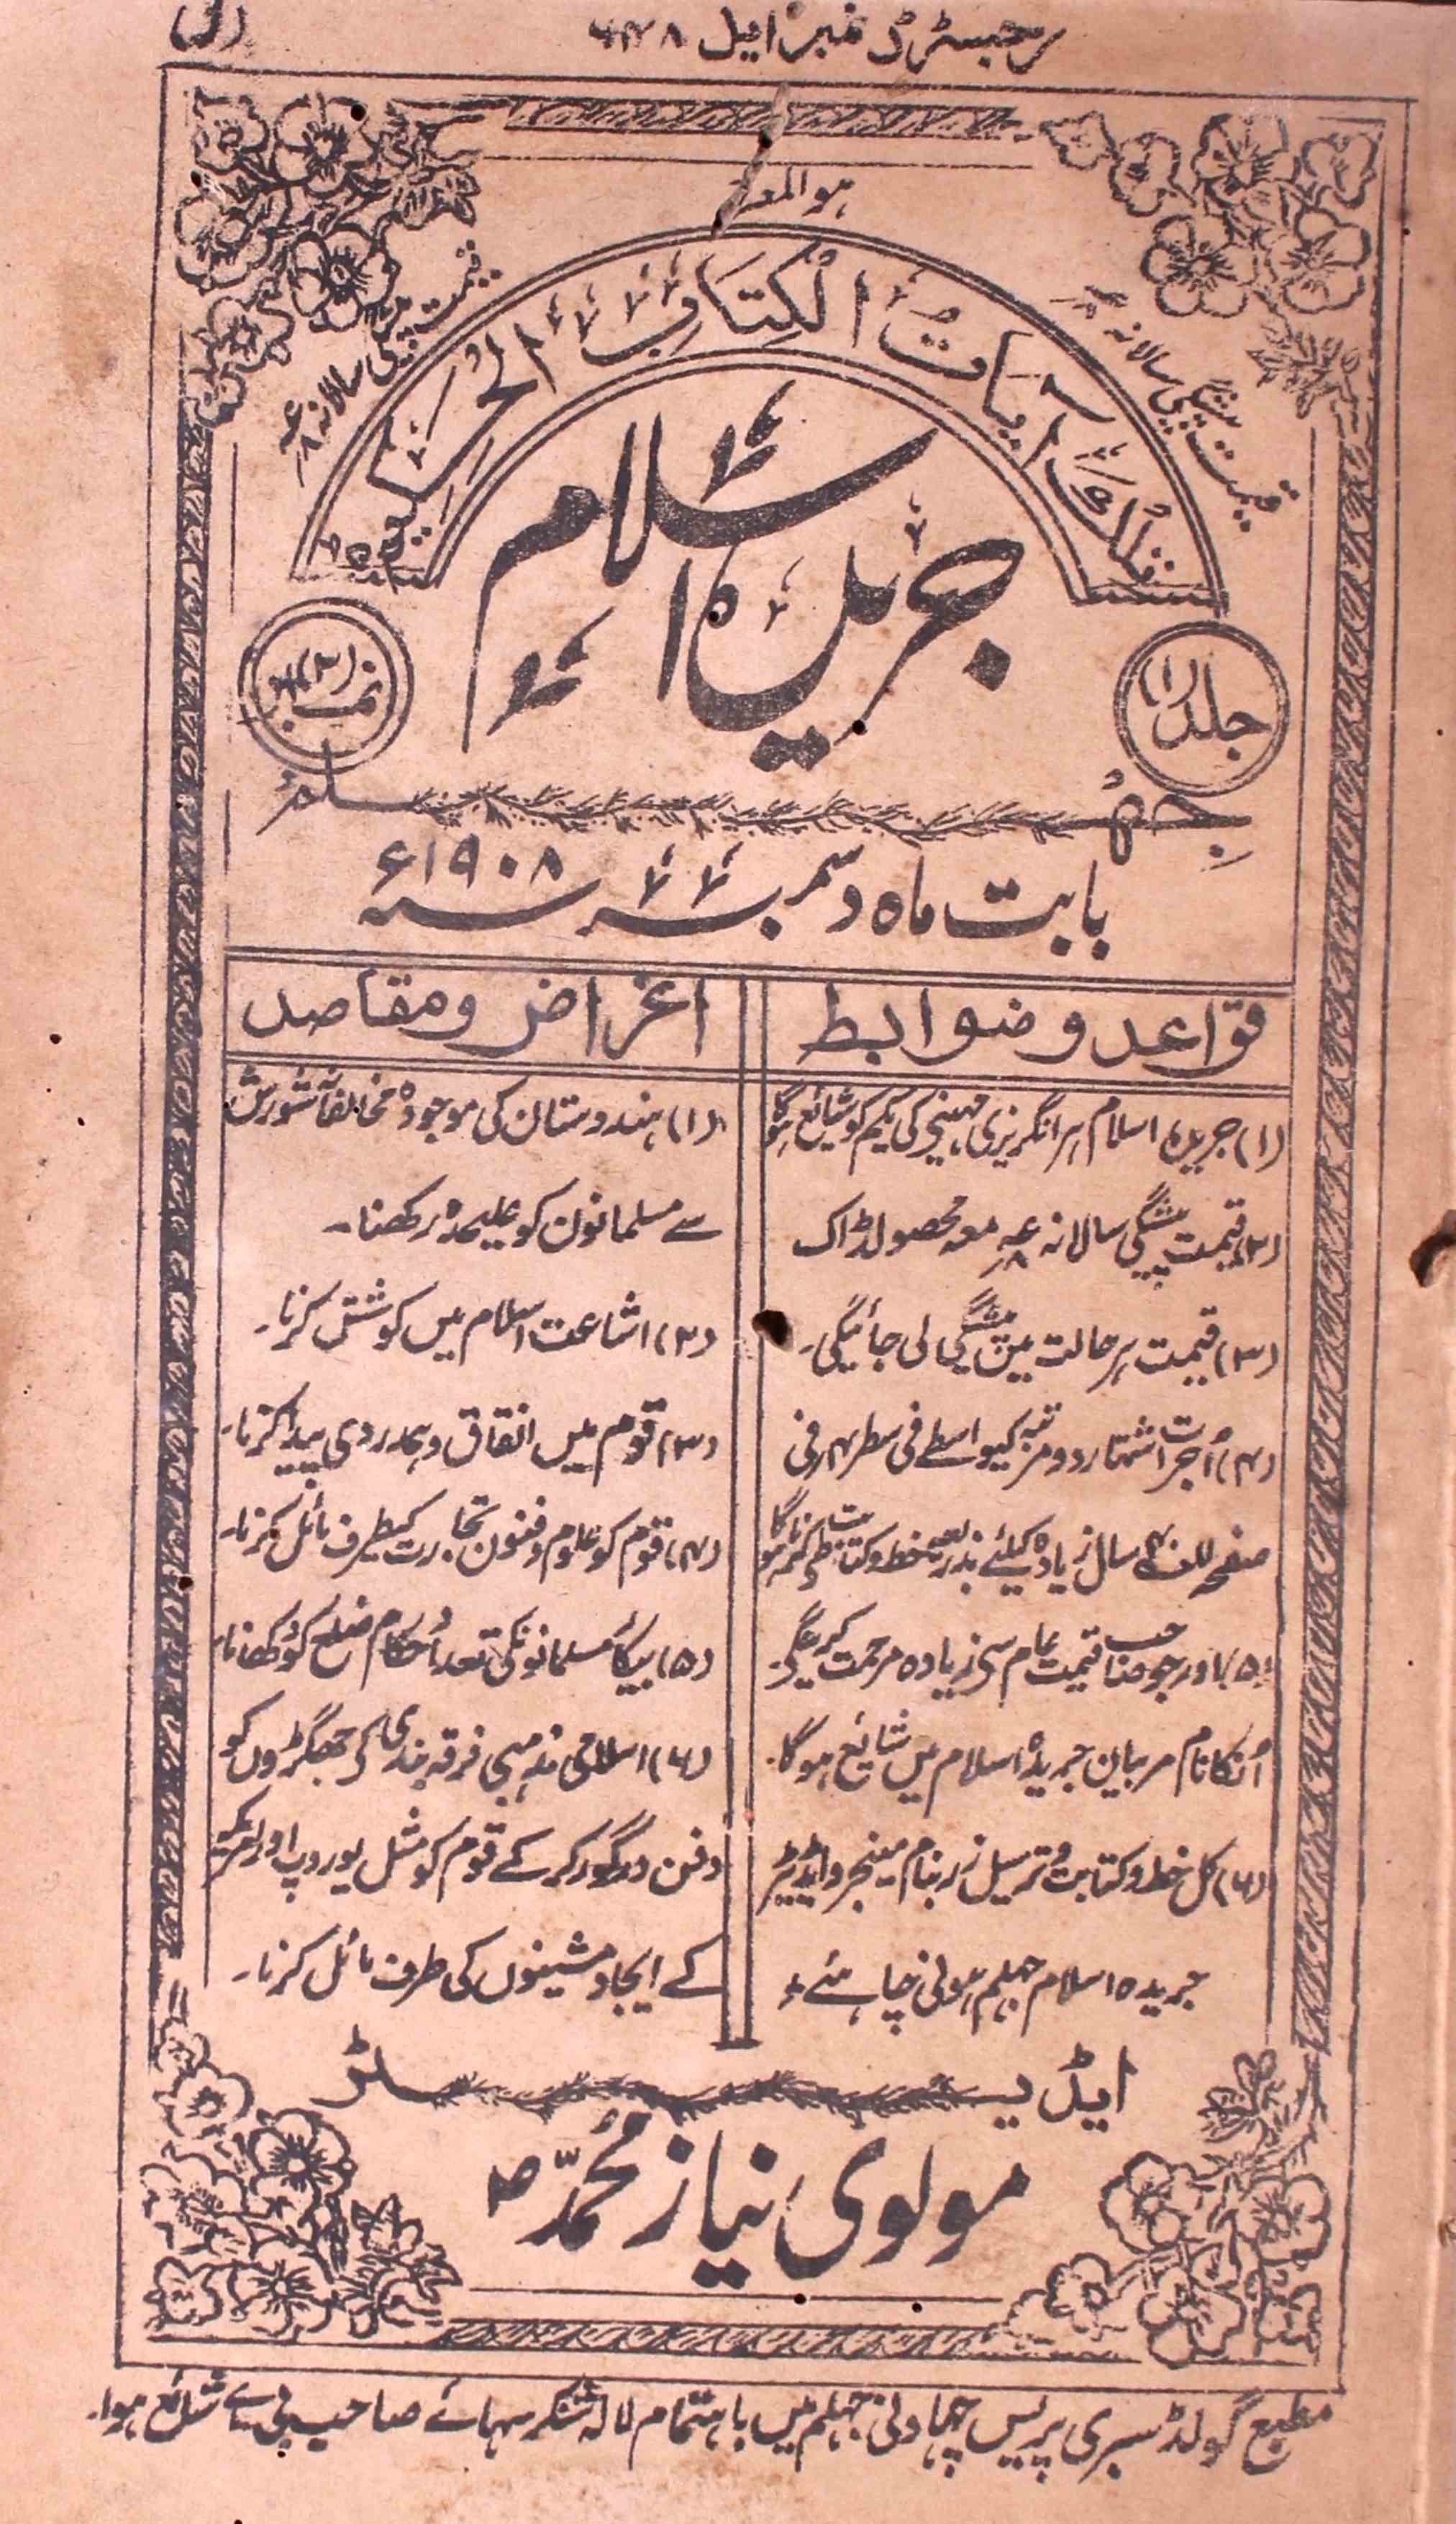 Jareeda-e-Islam, Jehlam